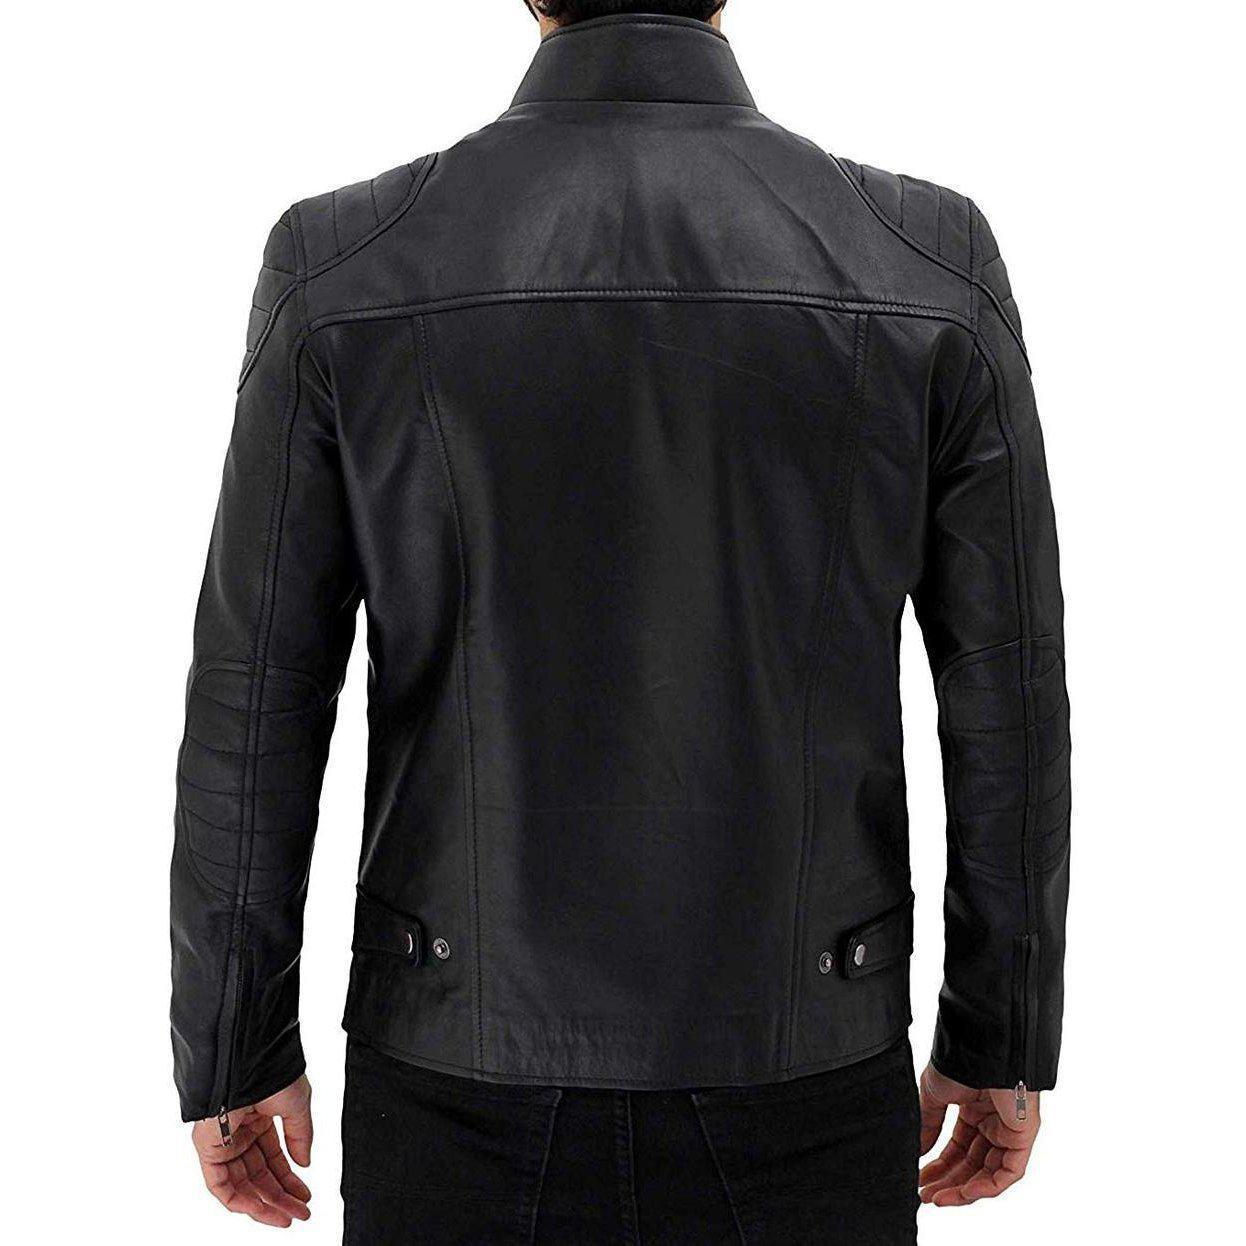 Black Stylish Original Leather Jacket for Men - Leather Jacket